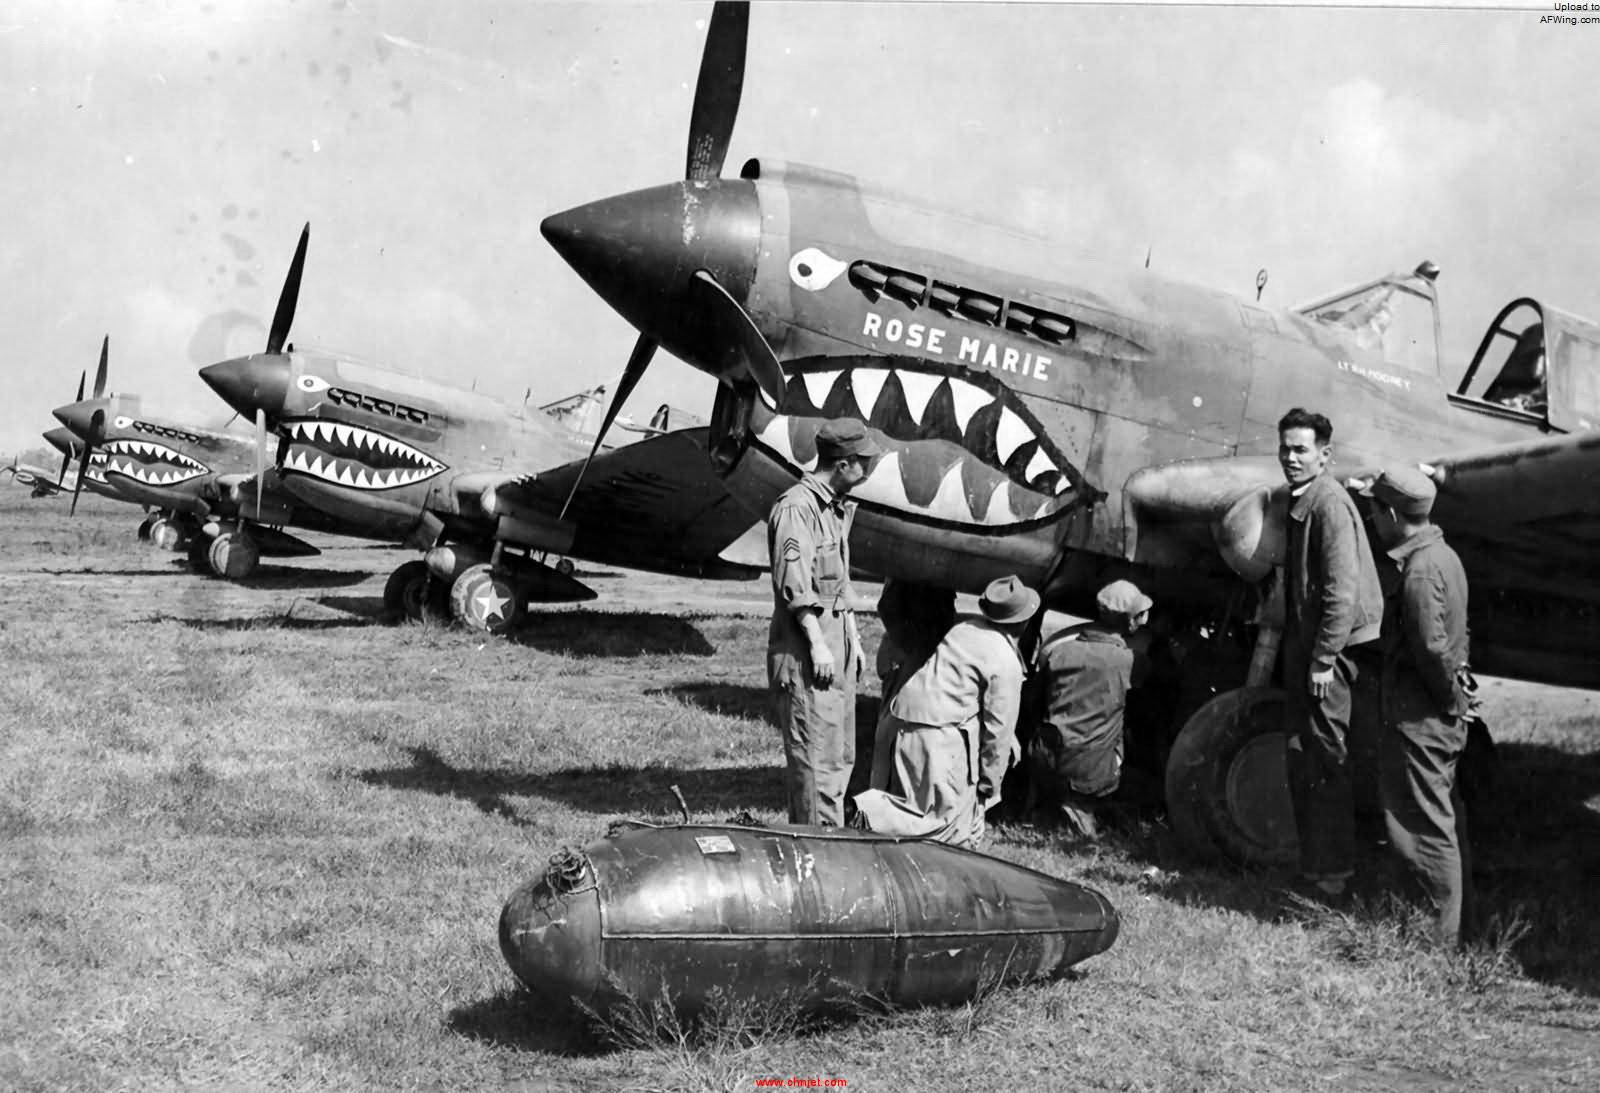 P-40E_Rose_Marie_16th_FS_23rd_FG_21_October_1942.jpg